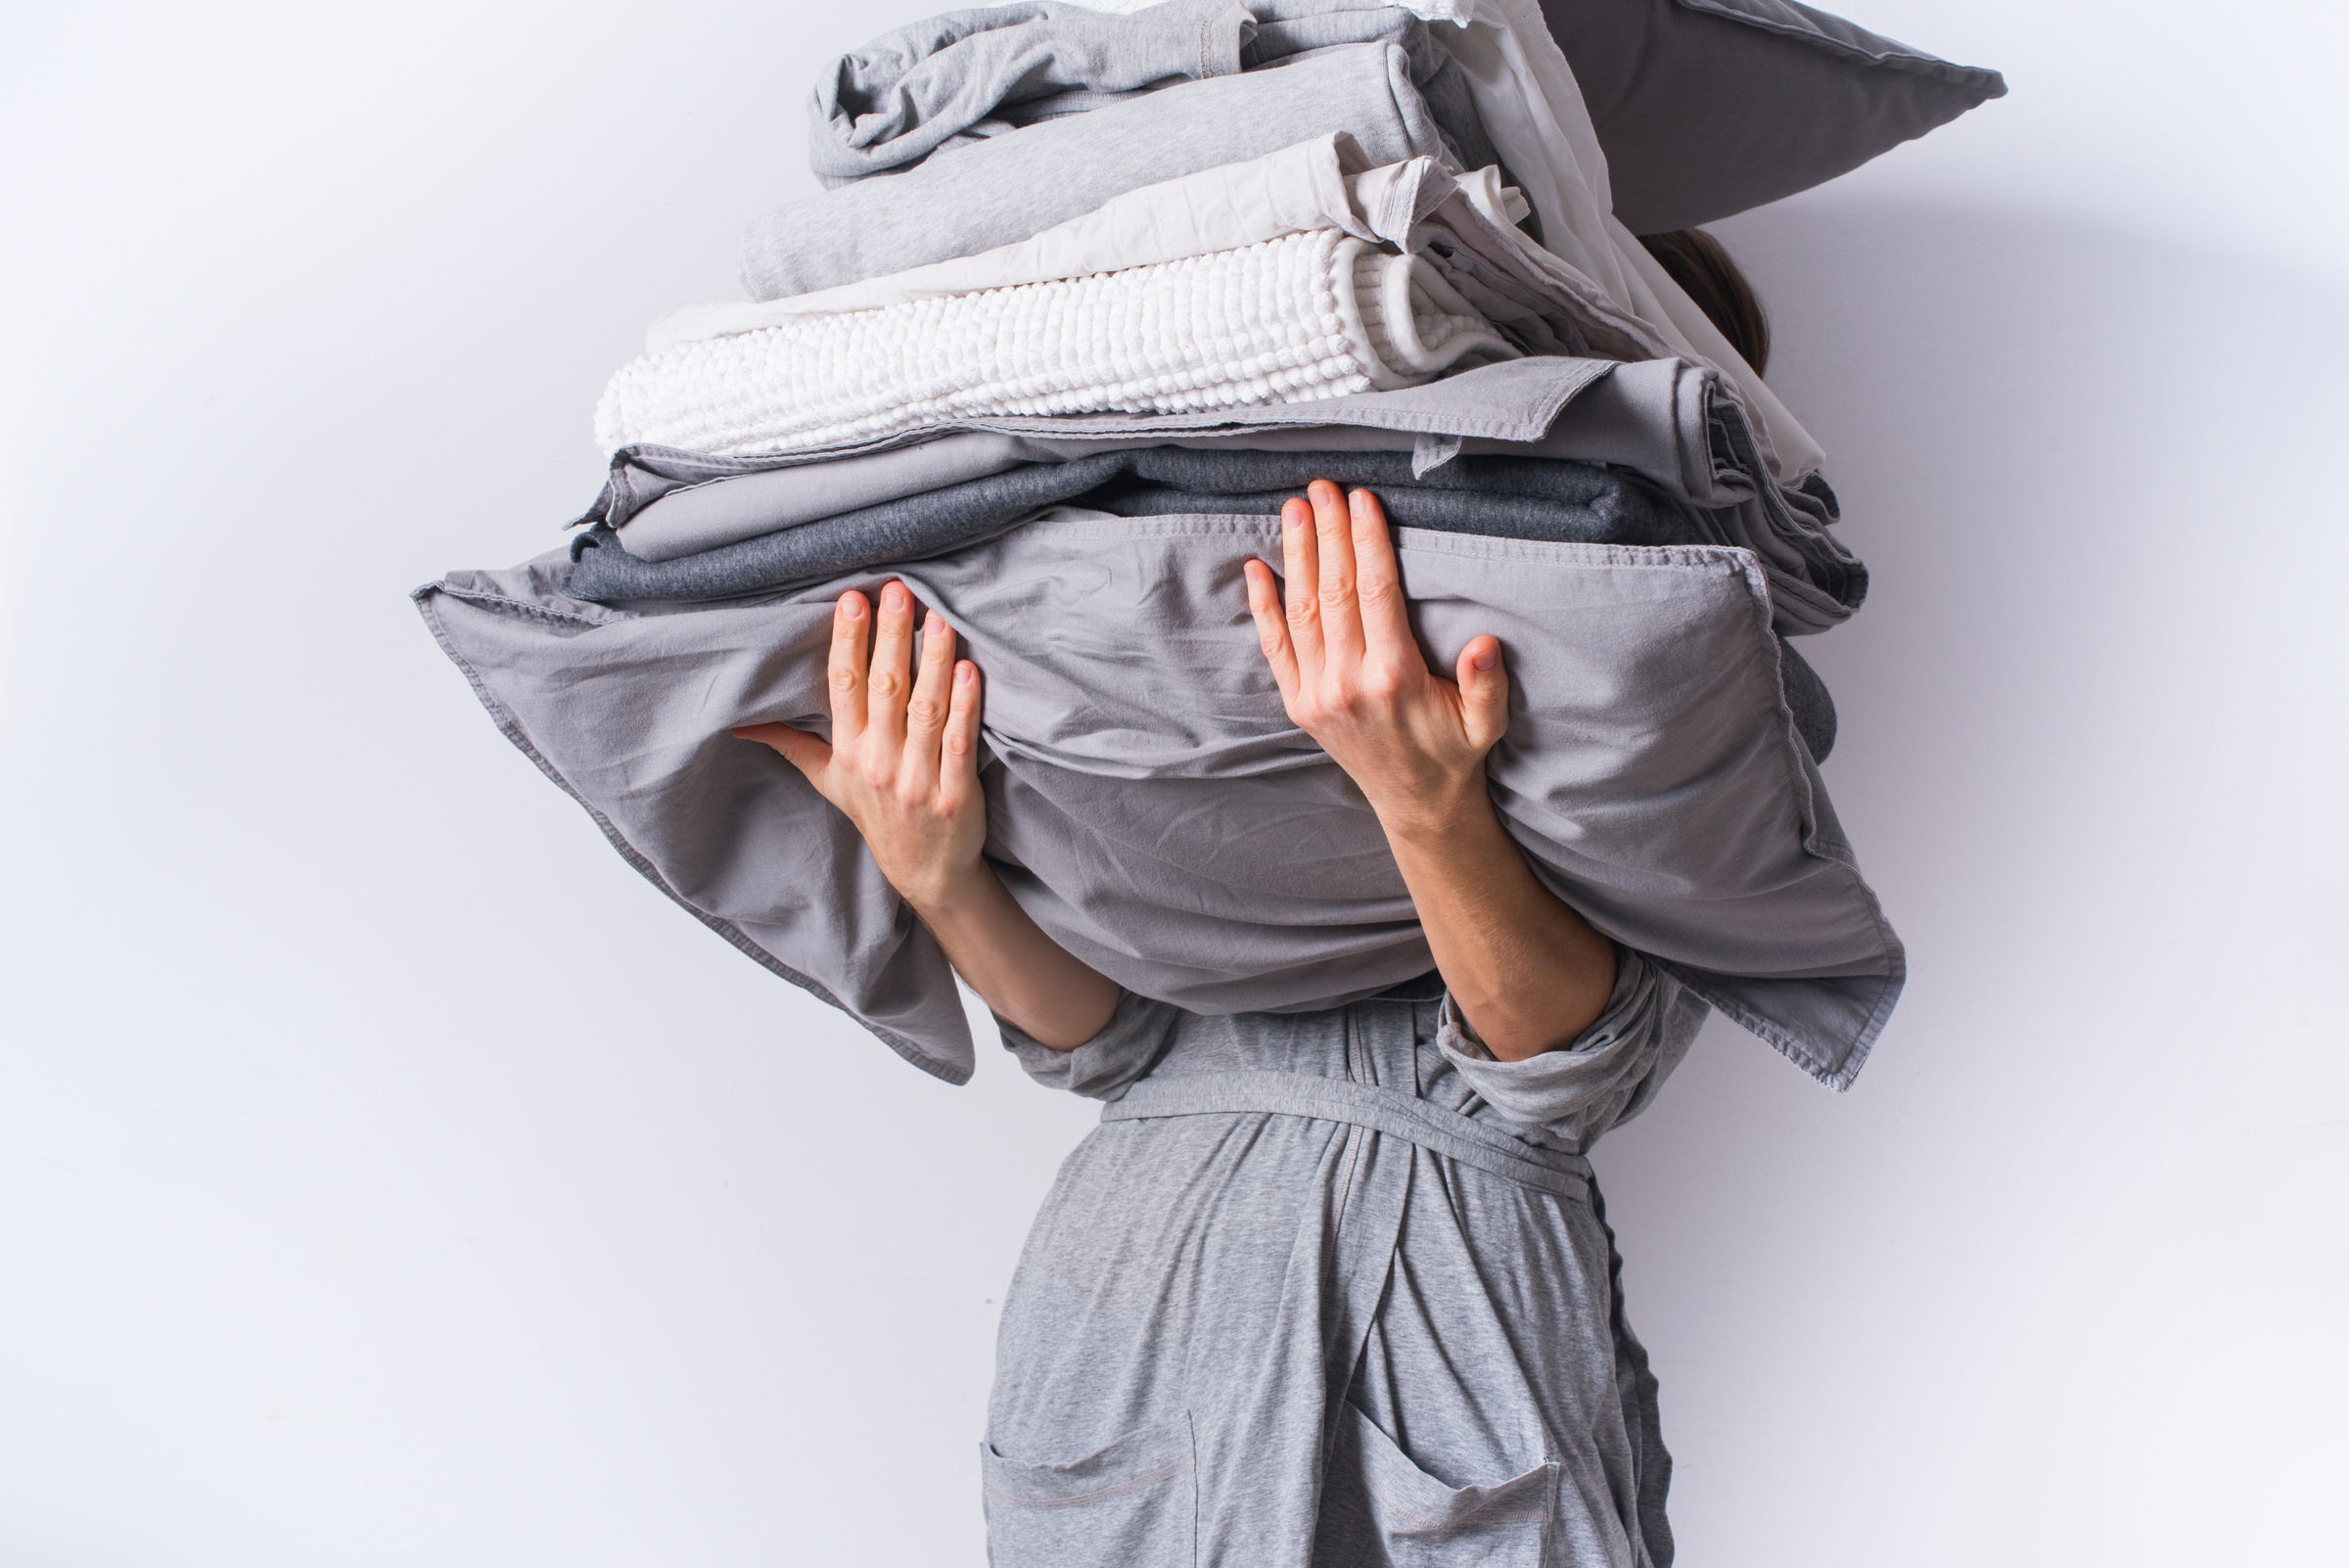 Гладить постельное бельё тоже вовсе не нужно. Фото © Shutterstock